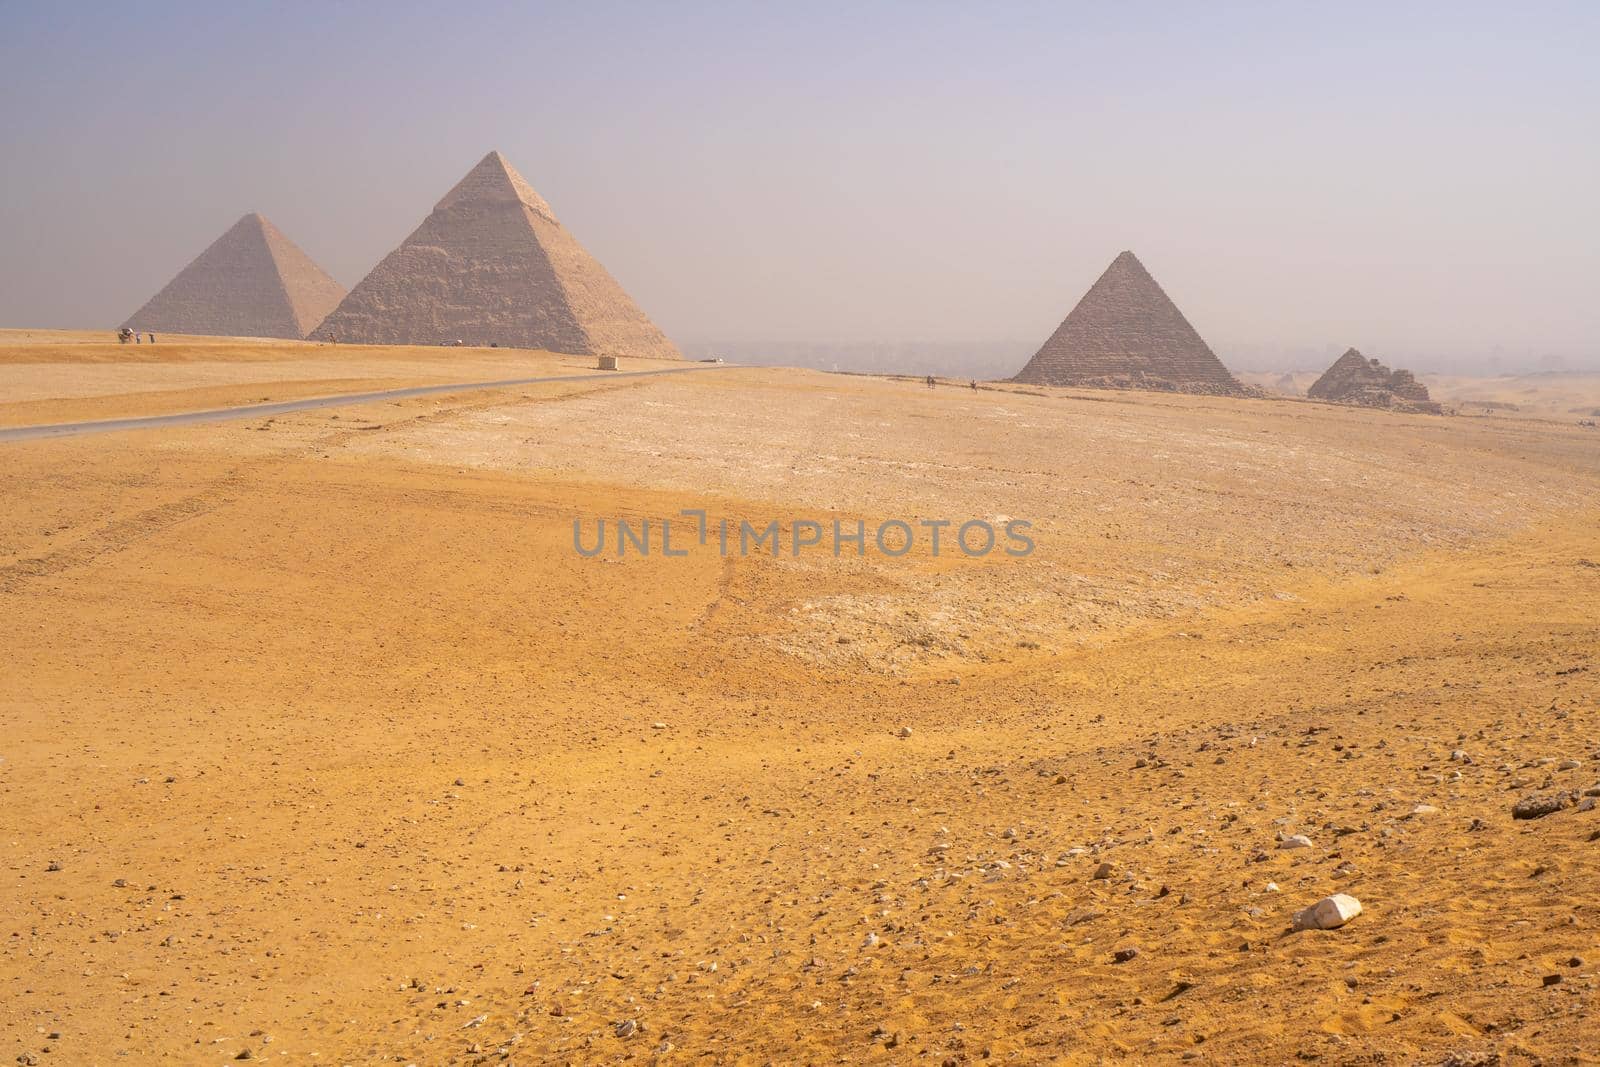 Pyramids of Giza near Cairo Egypt by Arsgera